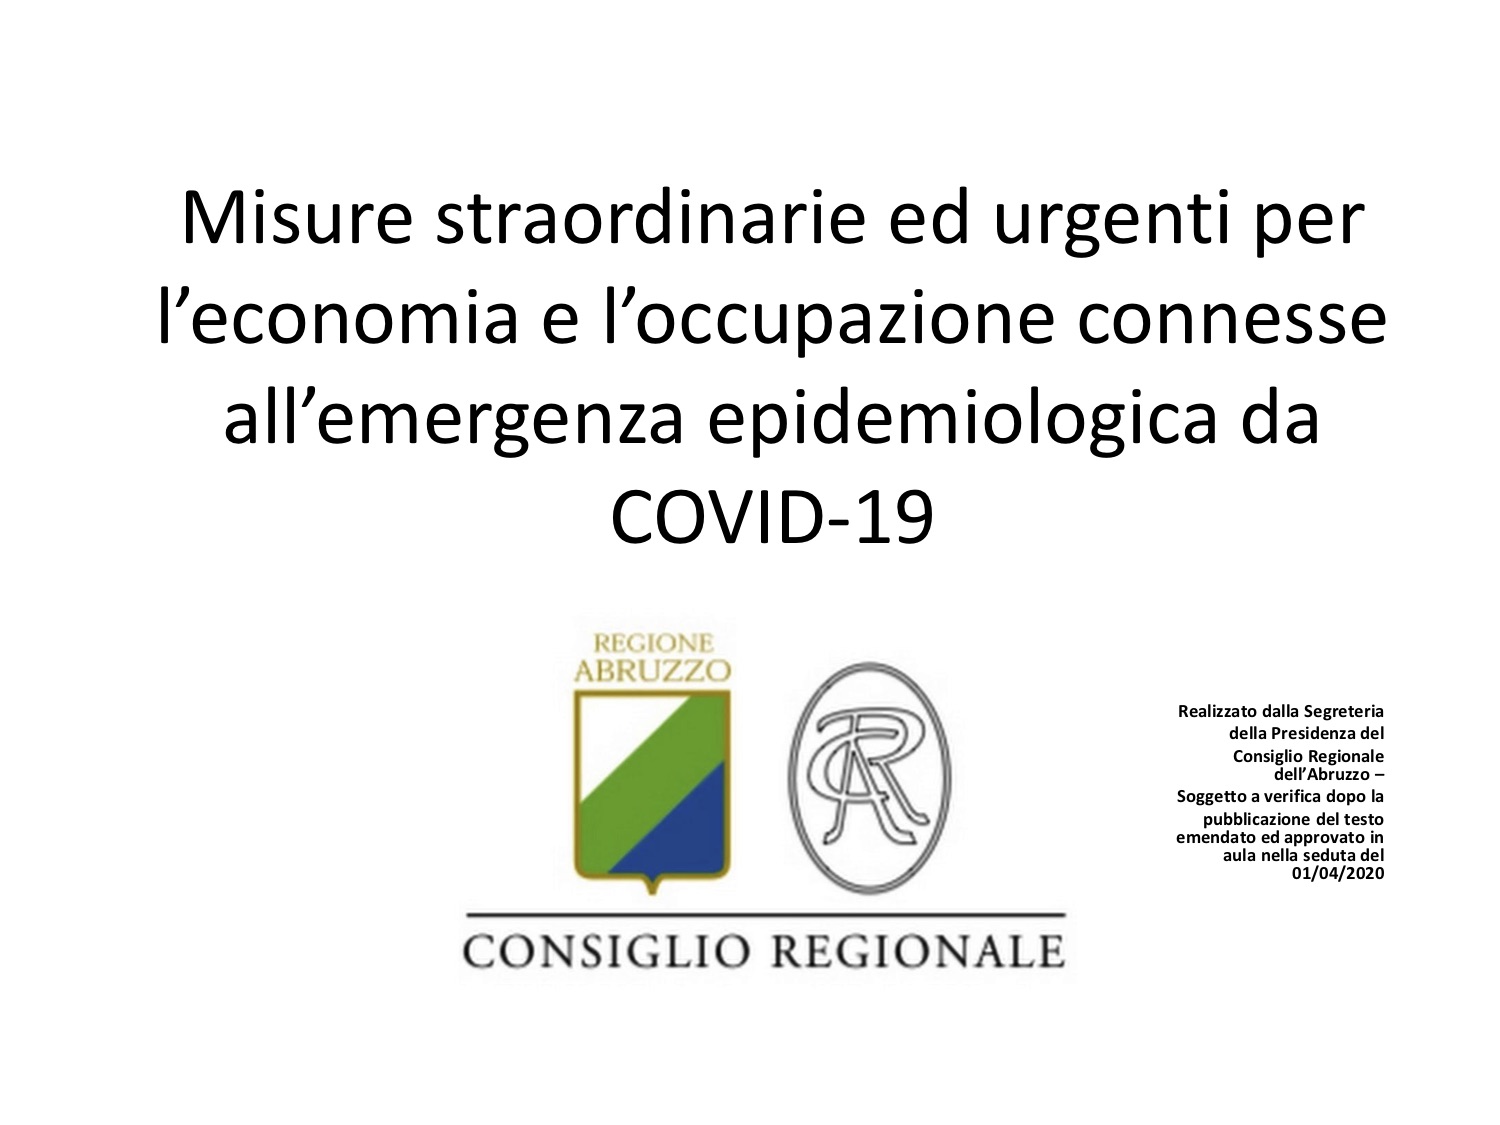 Coronavirus, misure straordinarie della Regione Abruzzo